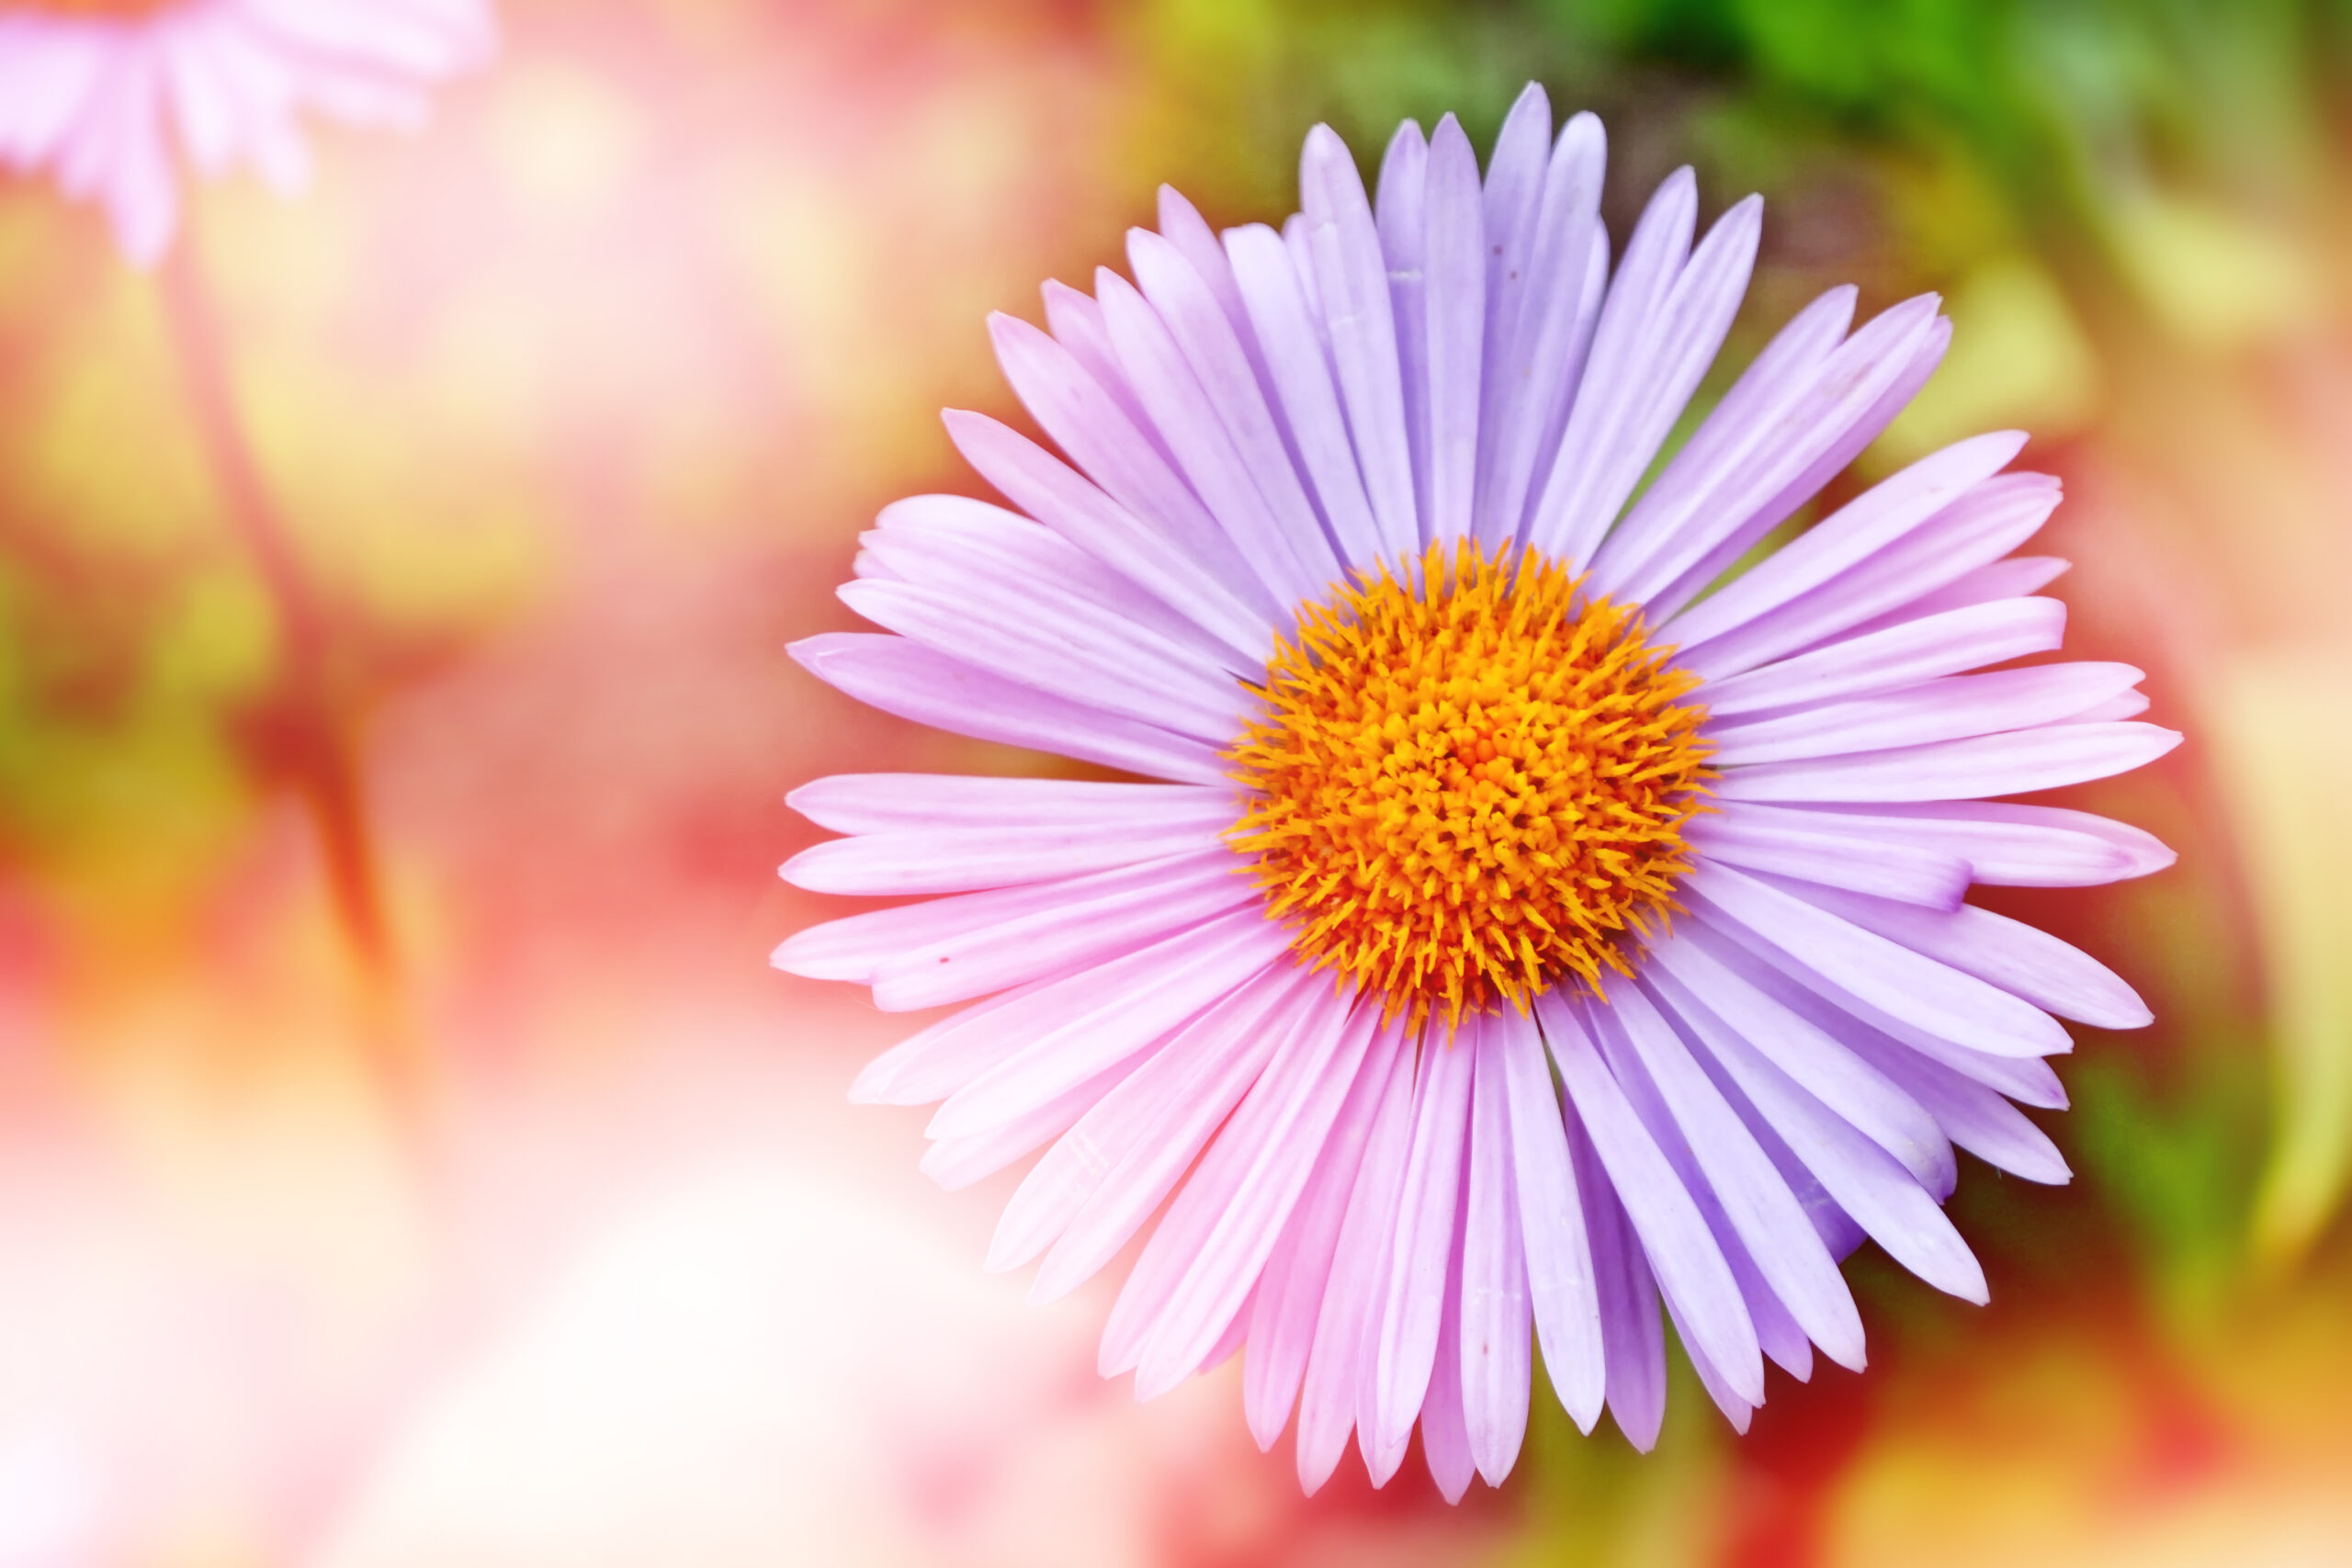 Fioletowy kwiat na kolorowym tle, który jest podobny do stokrotki